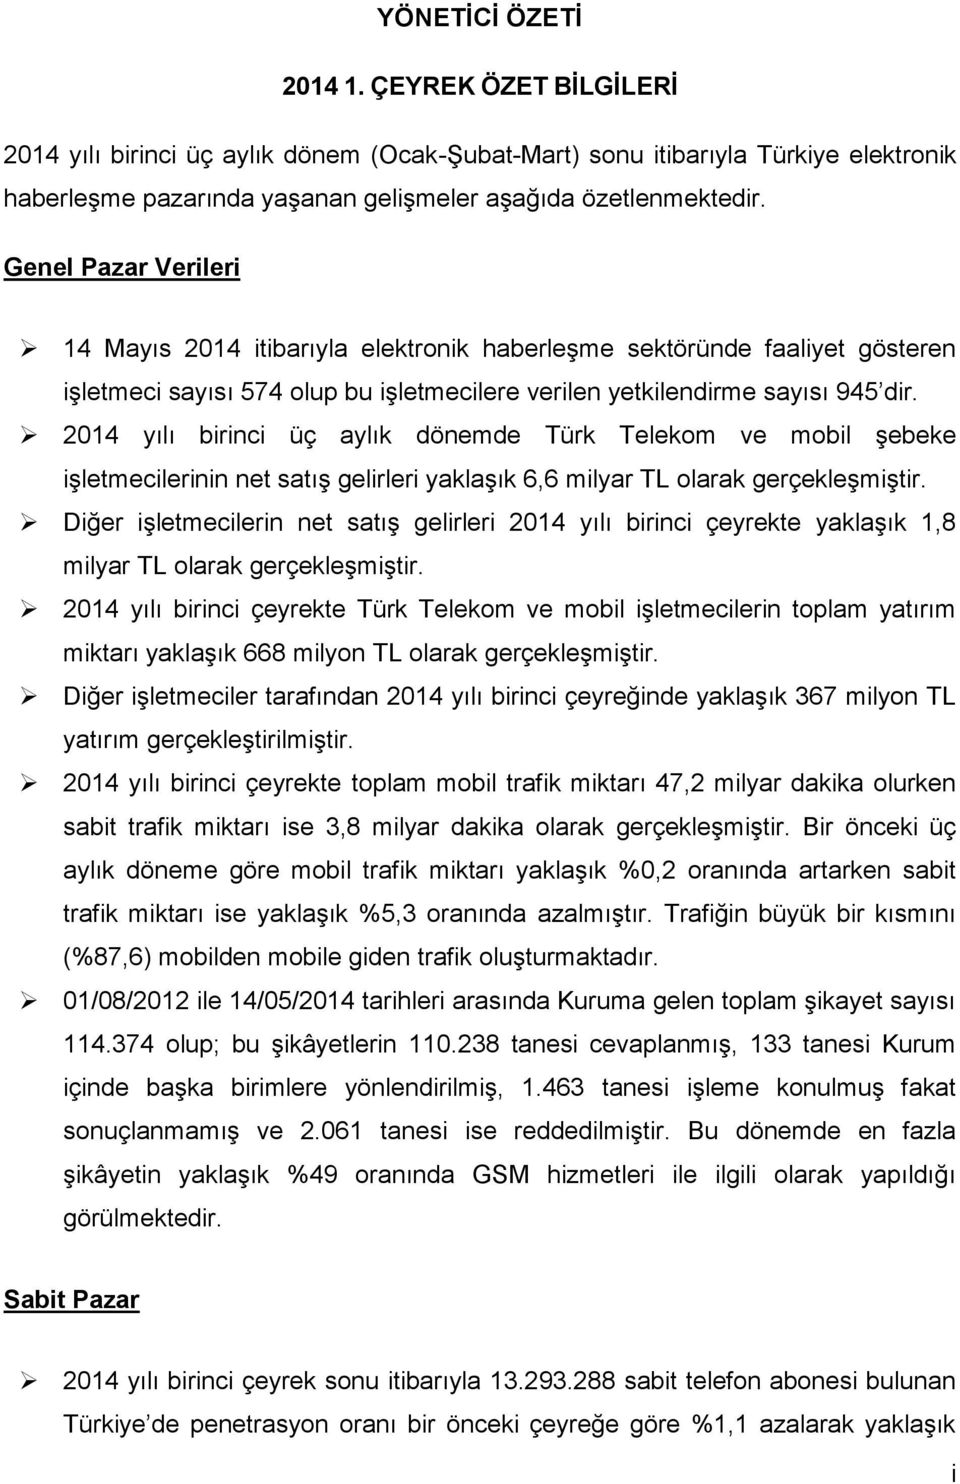 214 yılı birinci üç aylık dönemde Türk Telekom ve mobil şebeke işletmecilerinin net satış gelirleri yaklaşık 6,6 milyar TL olarak gerçekleşmiştir.